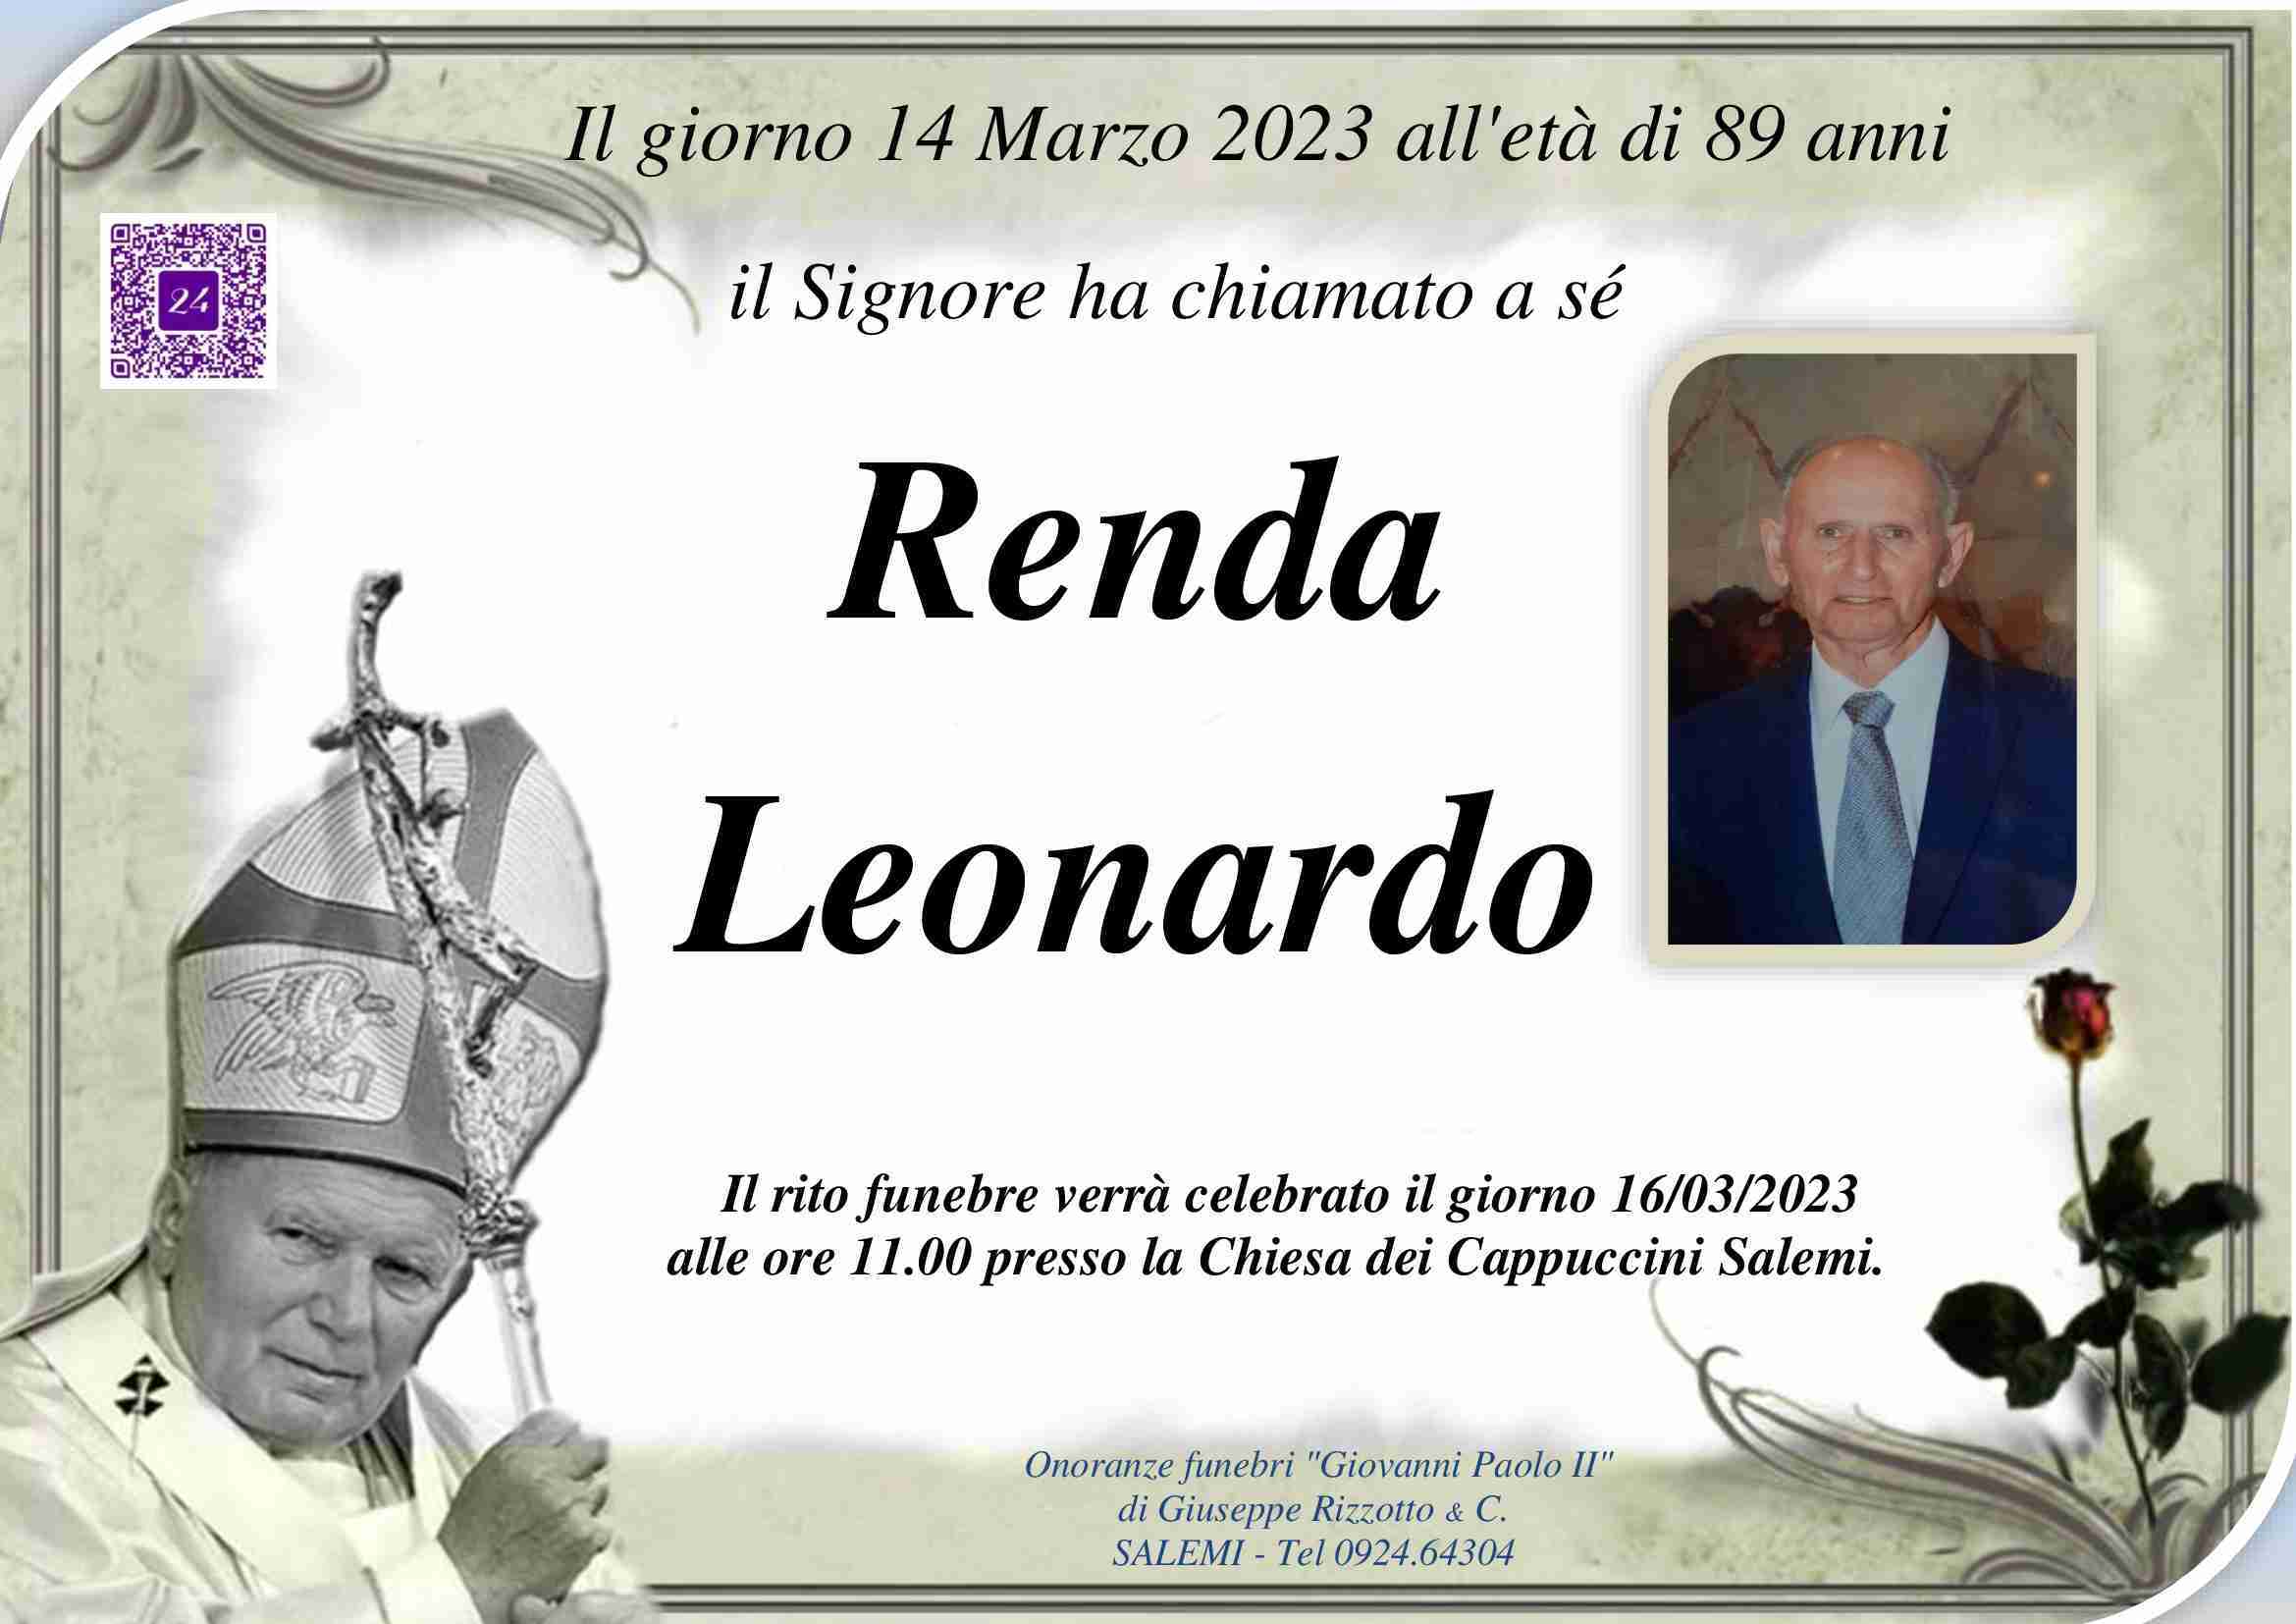 Leonardo Renda